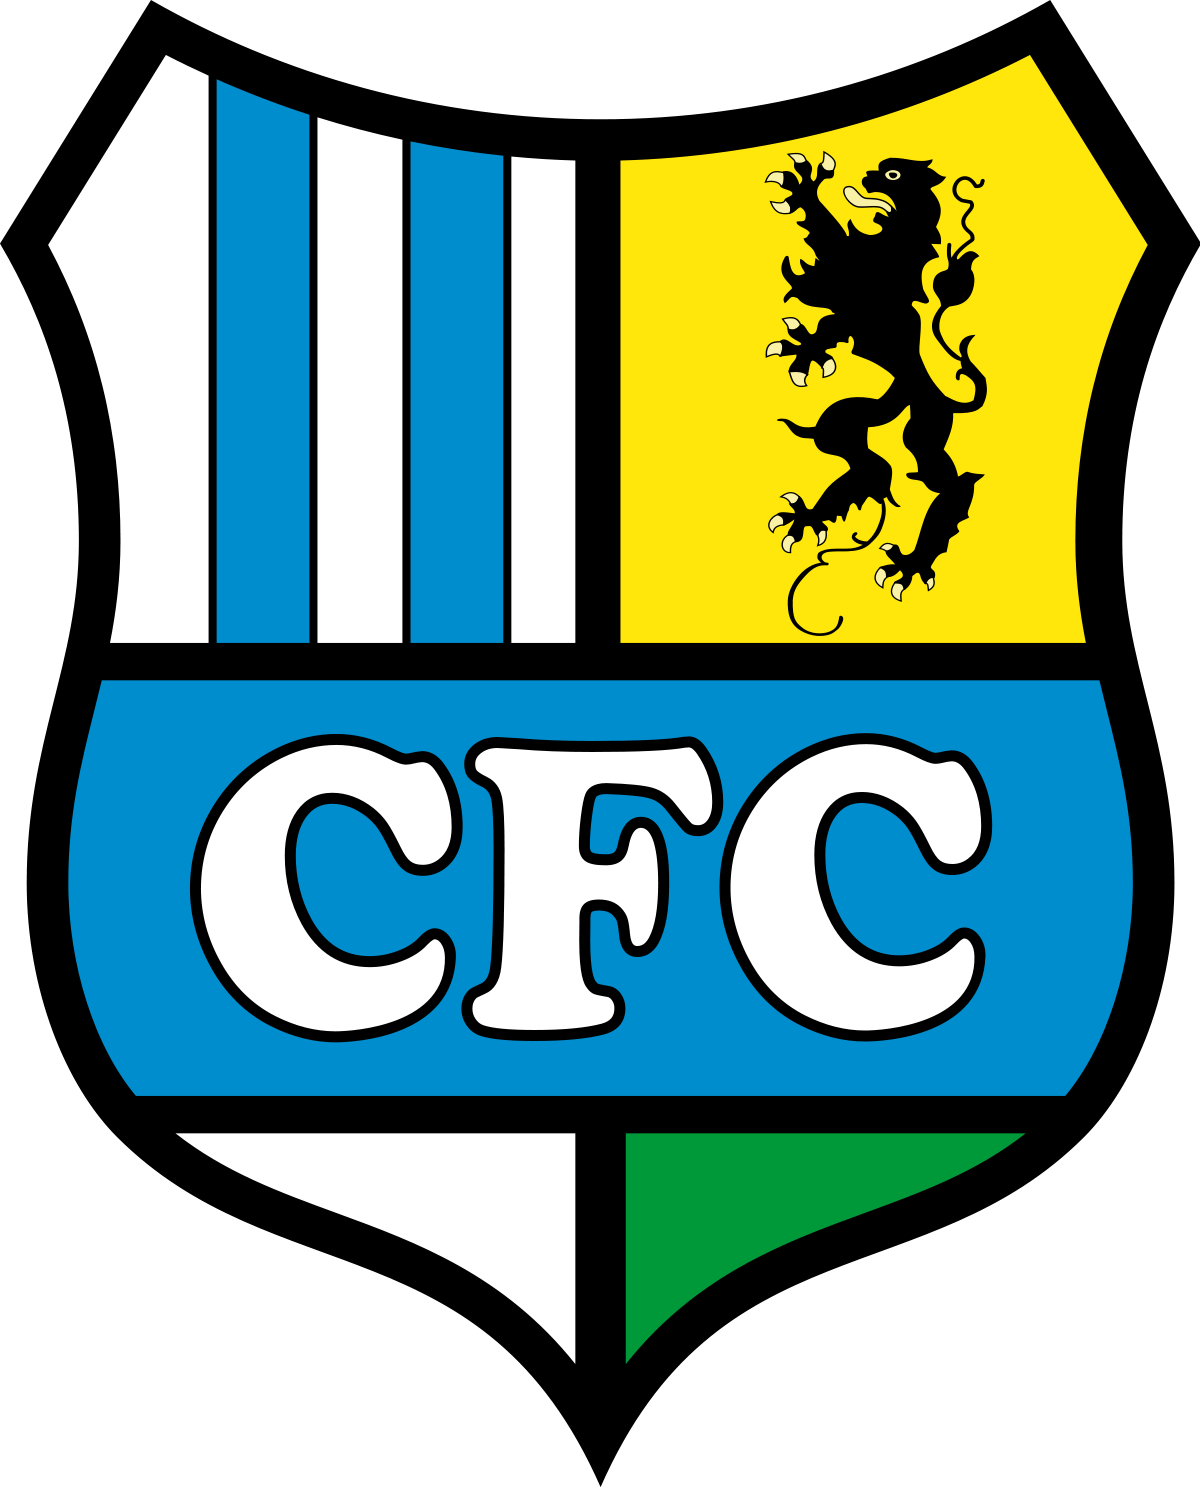 CFC Logo - Chemnitzer FC